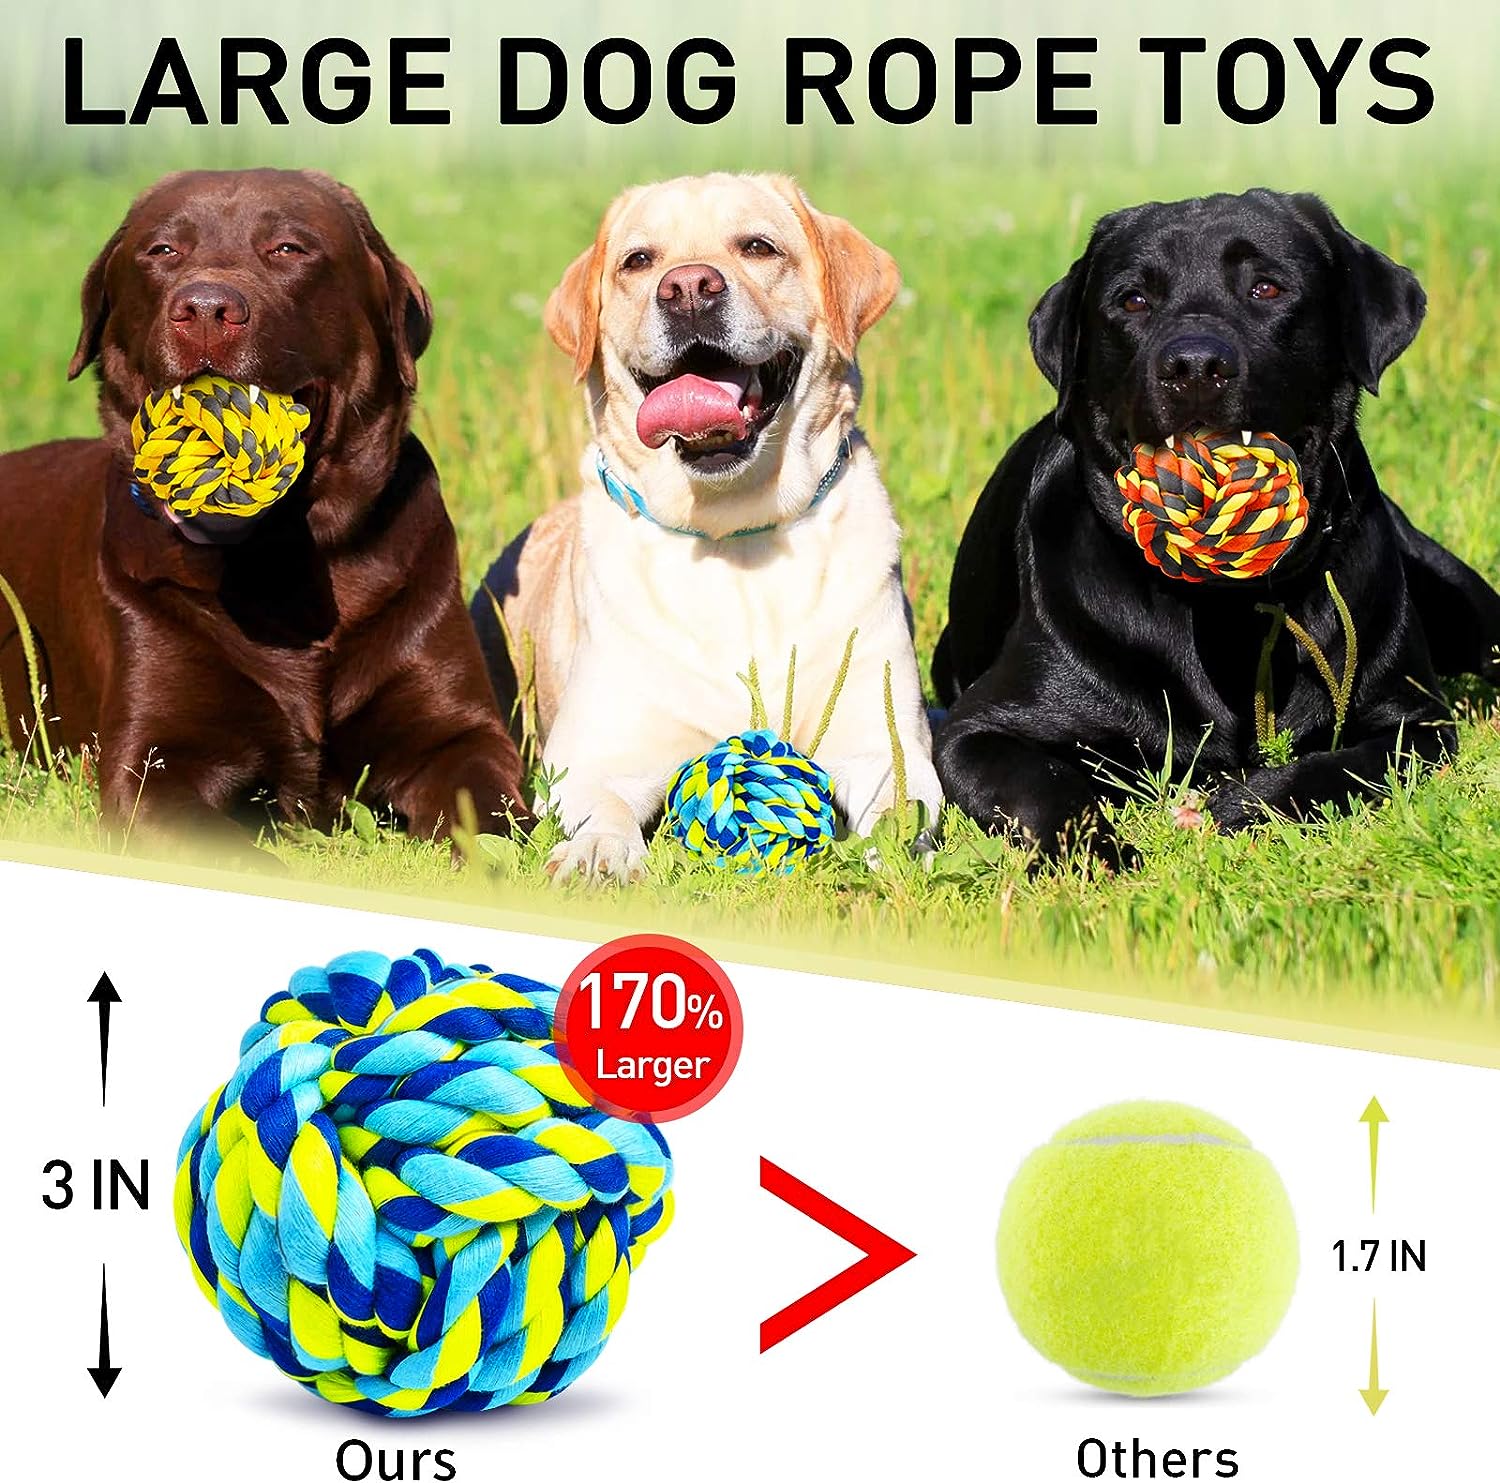 Juguetes masticables para perros XL para masticadores agresivos bolas para